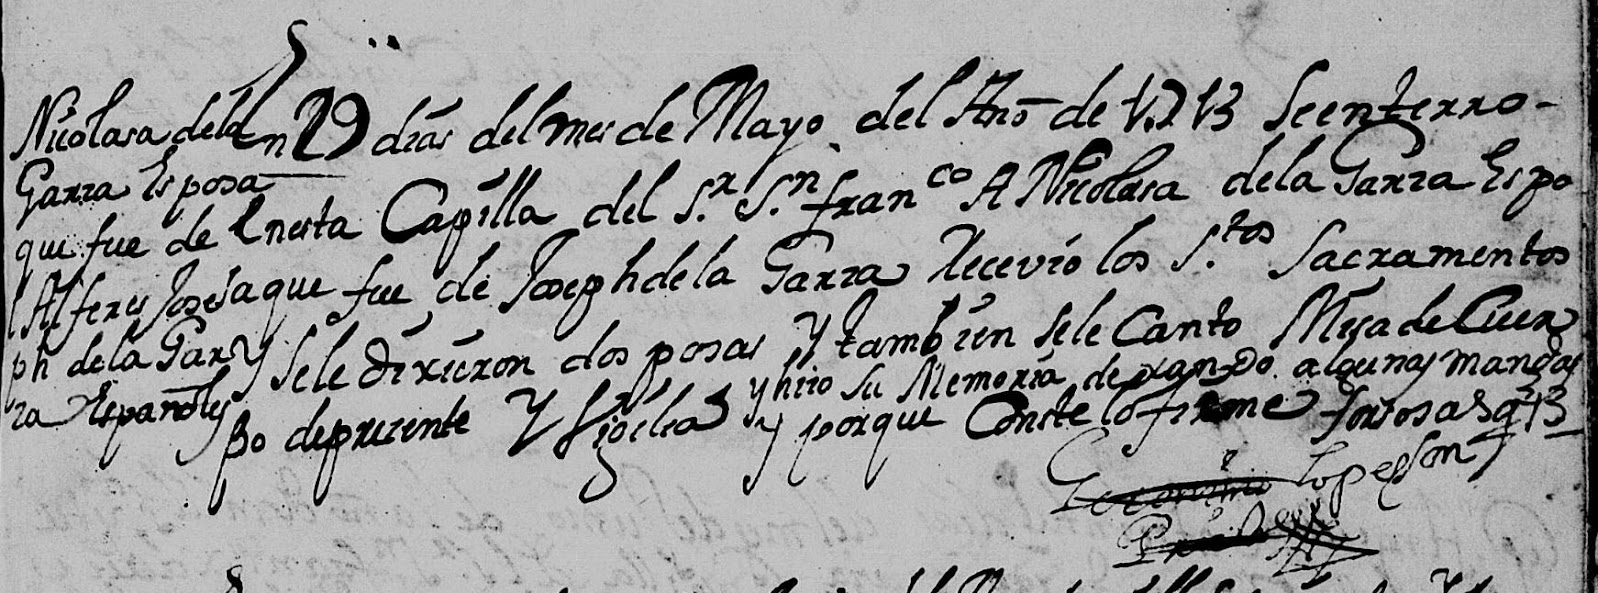 Nicolasa de La Graza death record 1713 monterrey